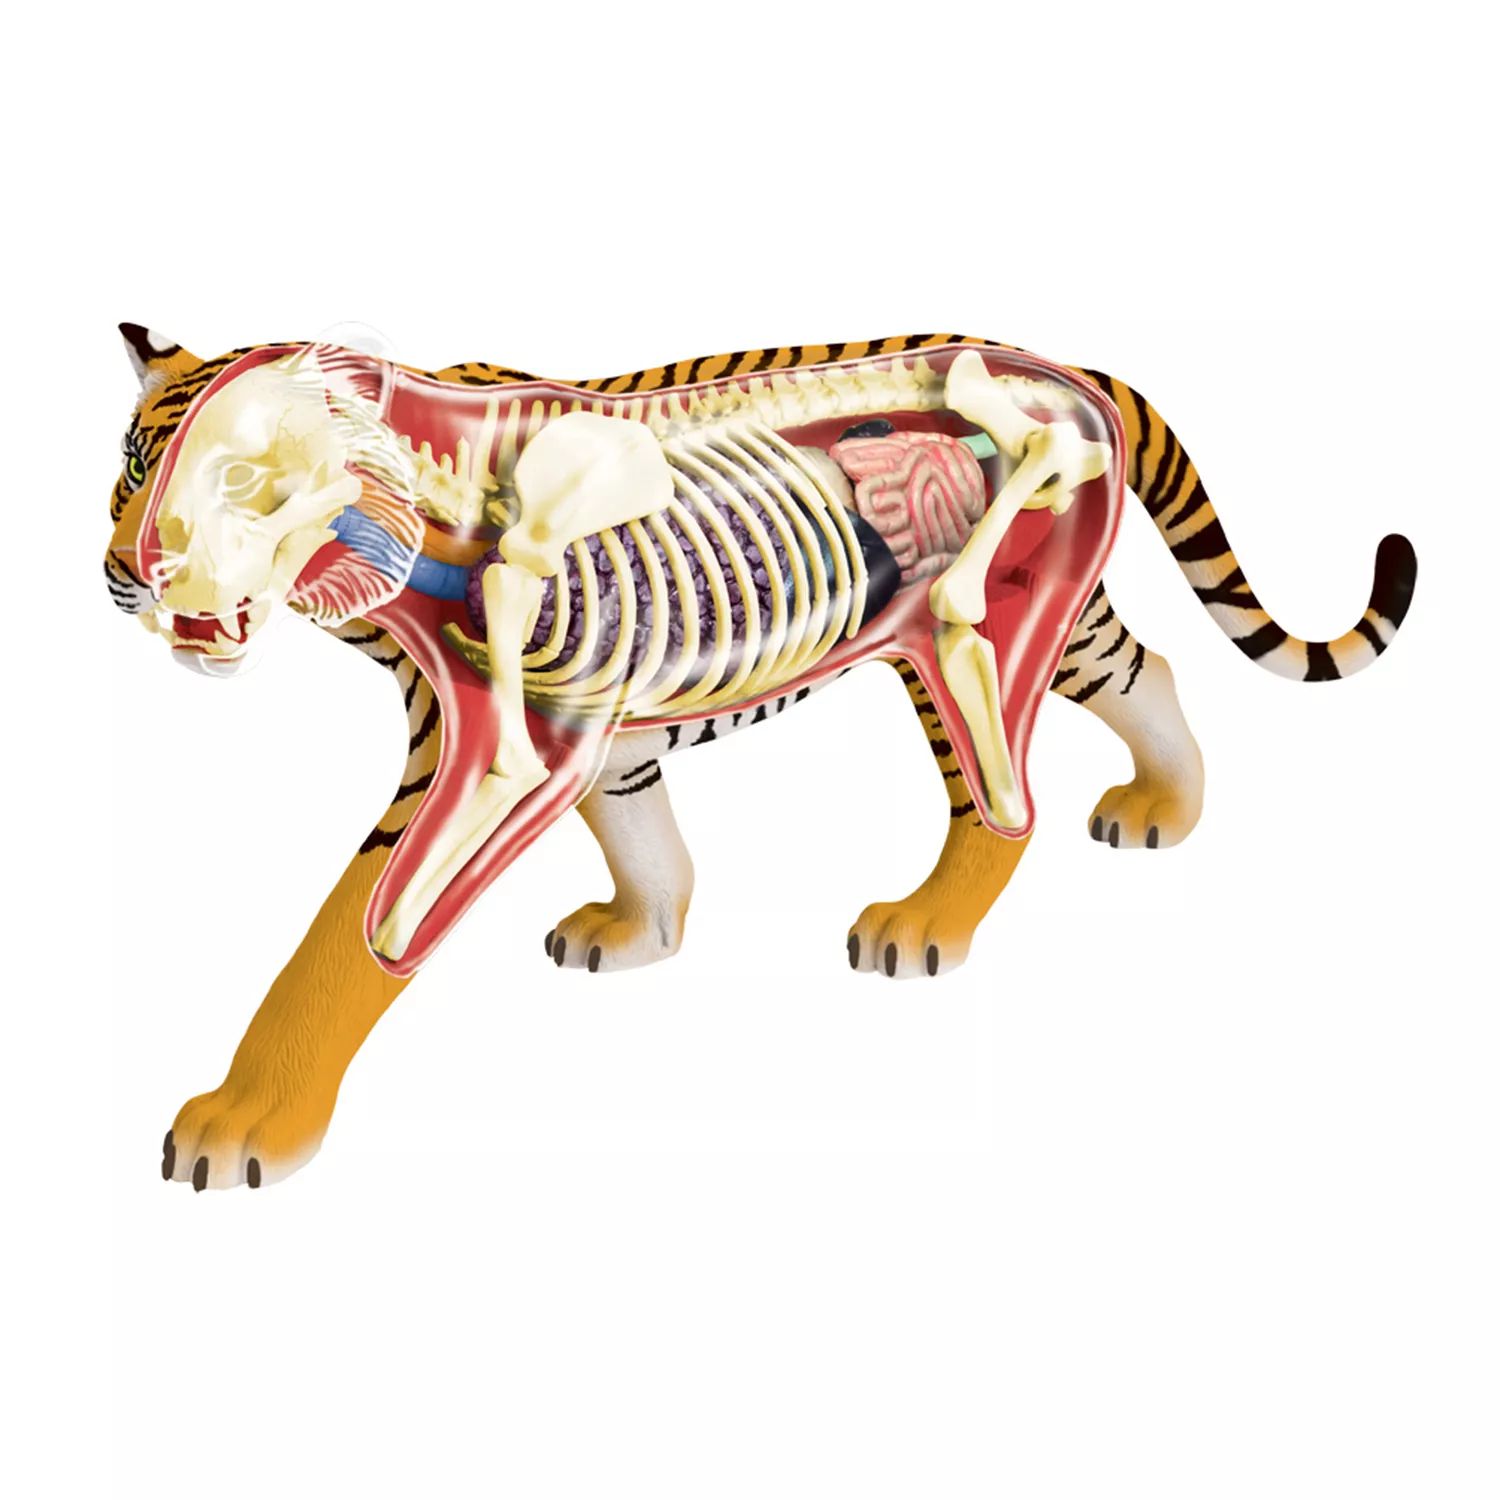 Модель анатомии тигра 4D Vision от John N. Hansen Co. 4d модель колена человека модель анатомии человеческих органов медицинское учение diy science